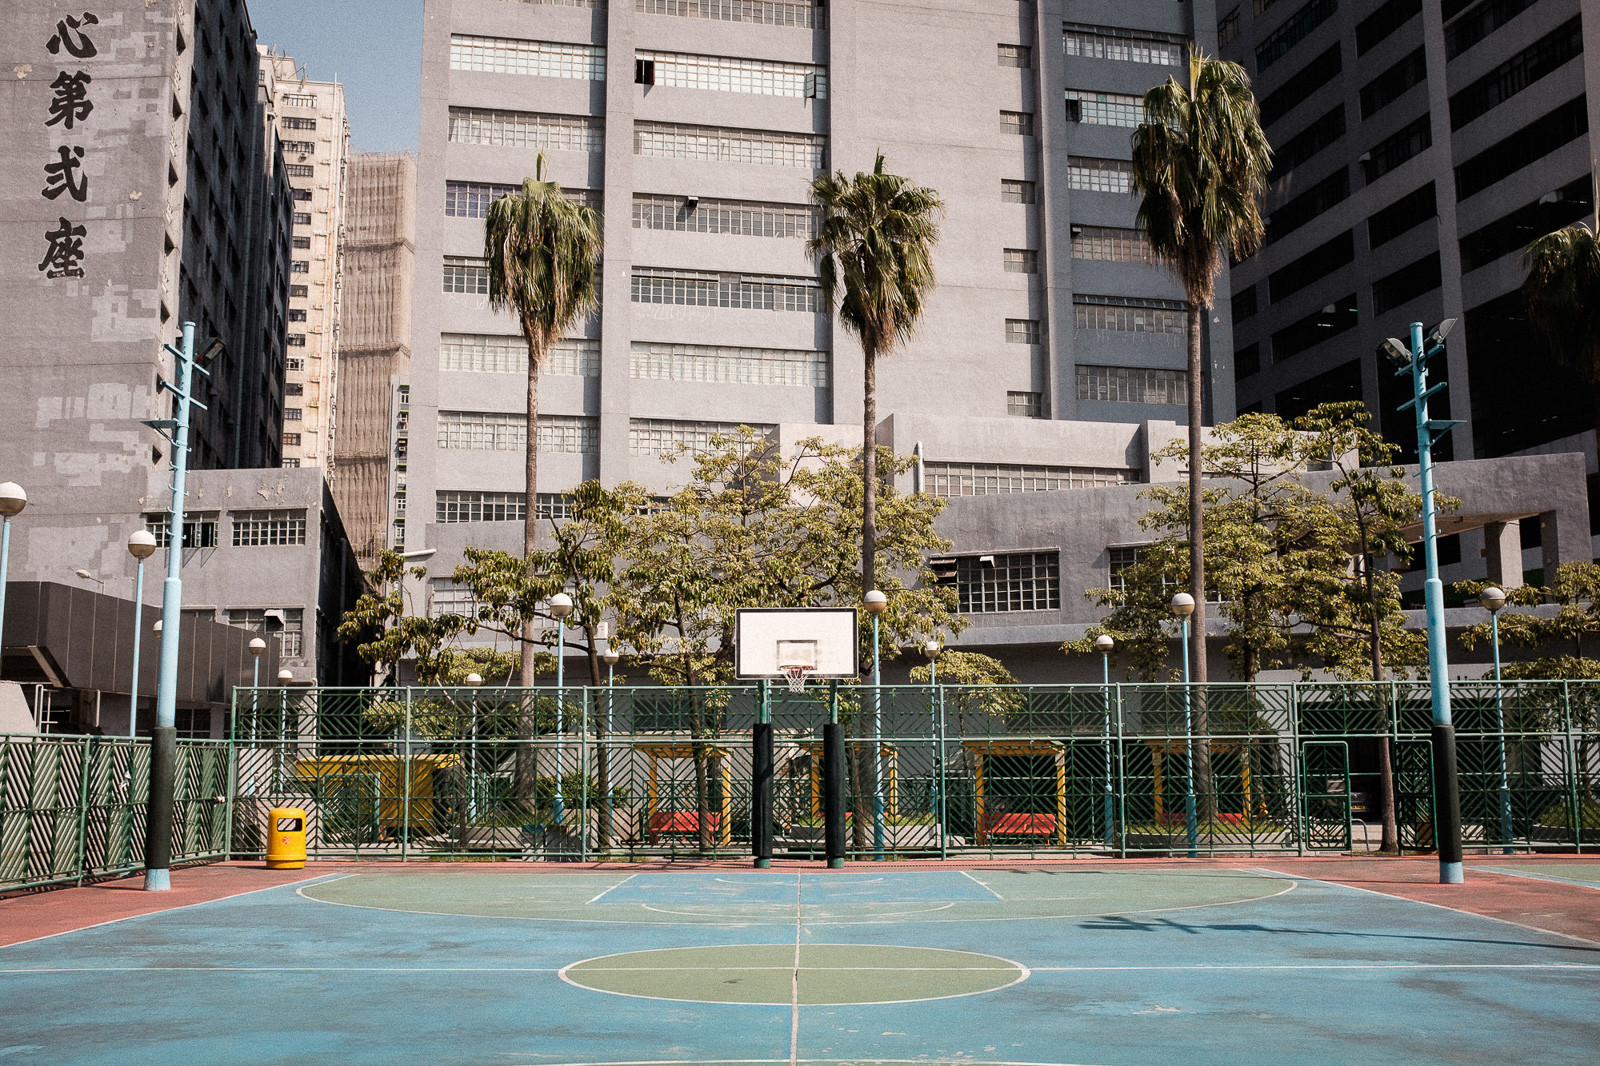 colorful basketball court in tsuen wan hong kong